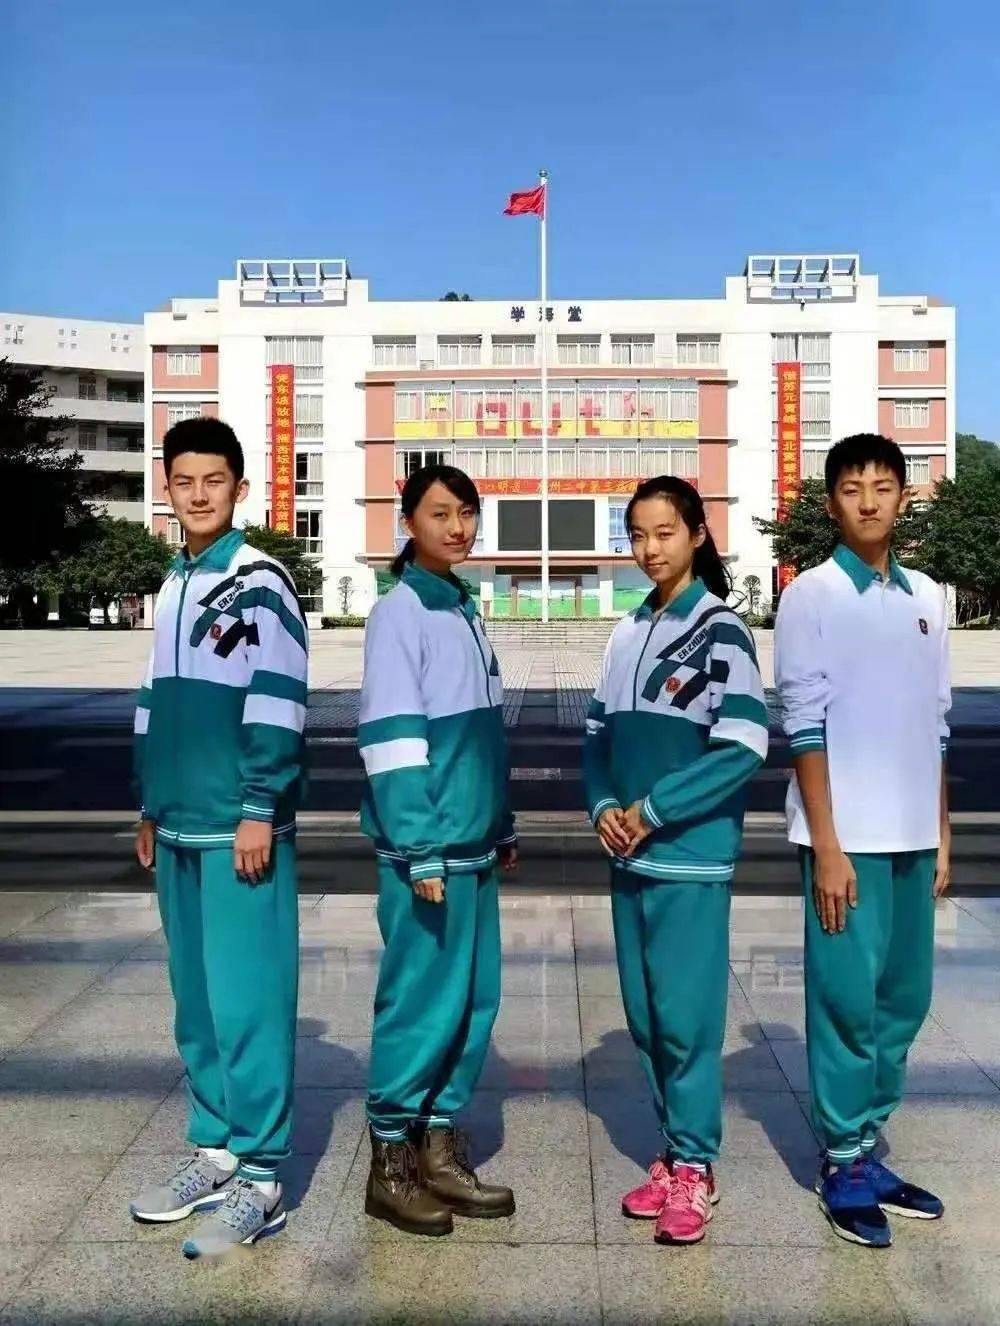 广州29所学校的冬季校服中考君汇总了把自己包成了一个粽子大家是不是